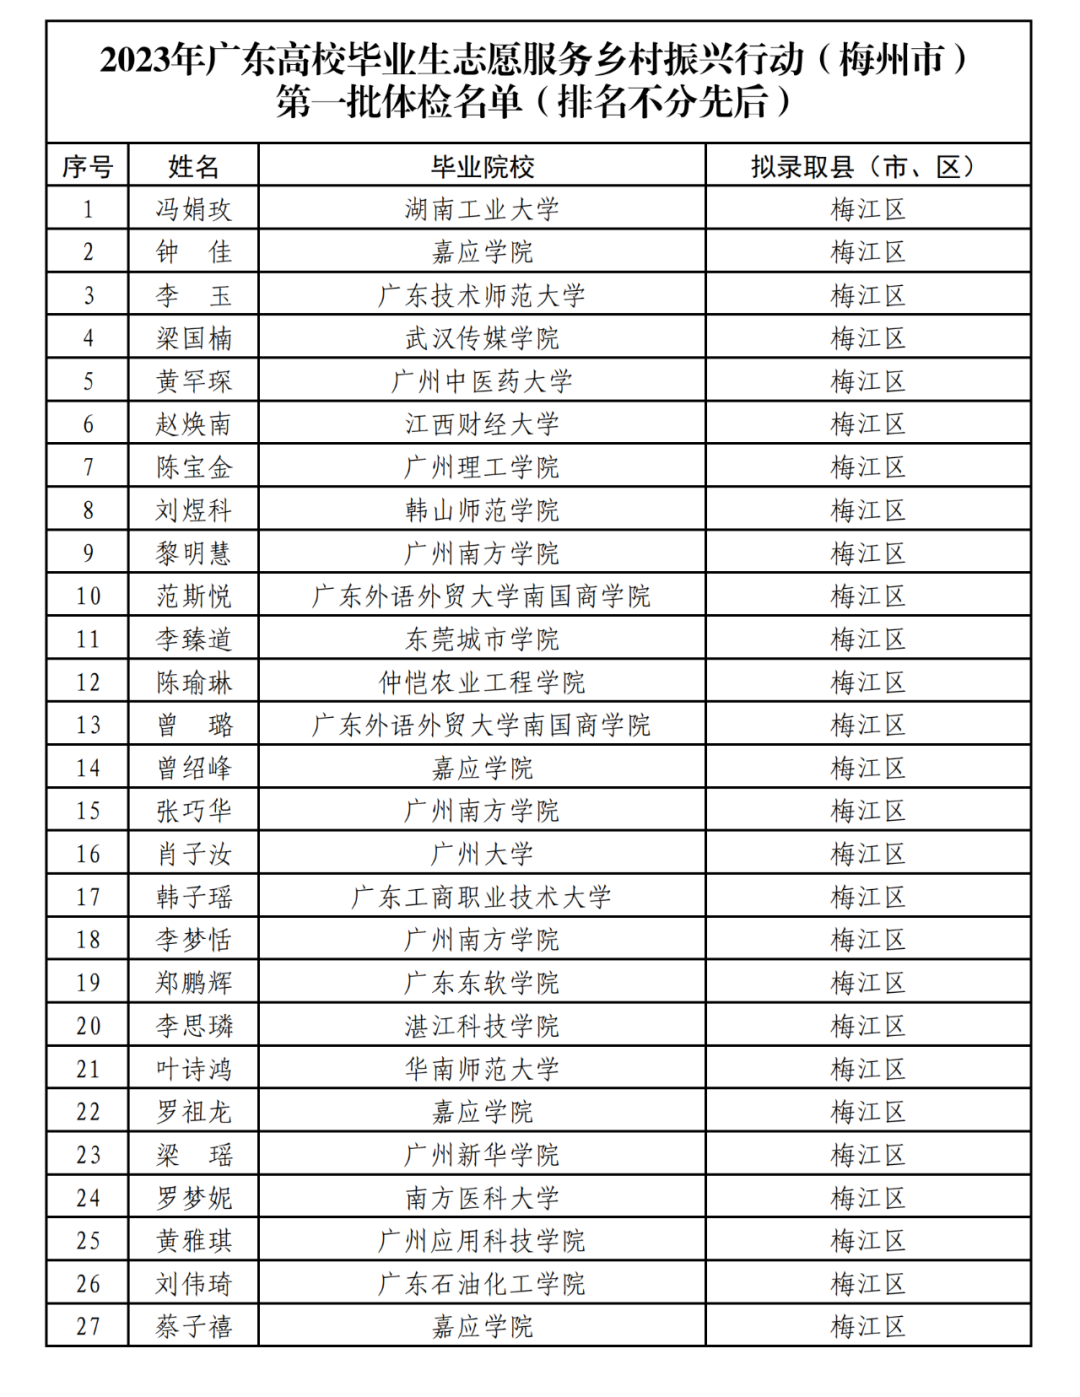 体检公告丨2023年广东高校毕业生志愿服务乡村振兴行动（梅州市）体检公告（第一批）